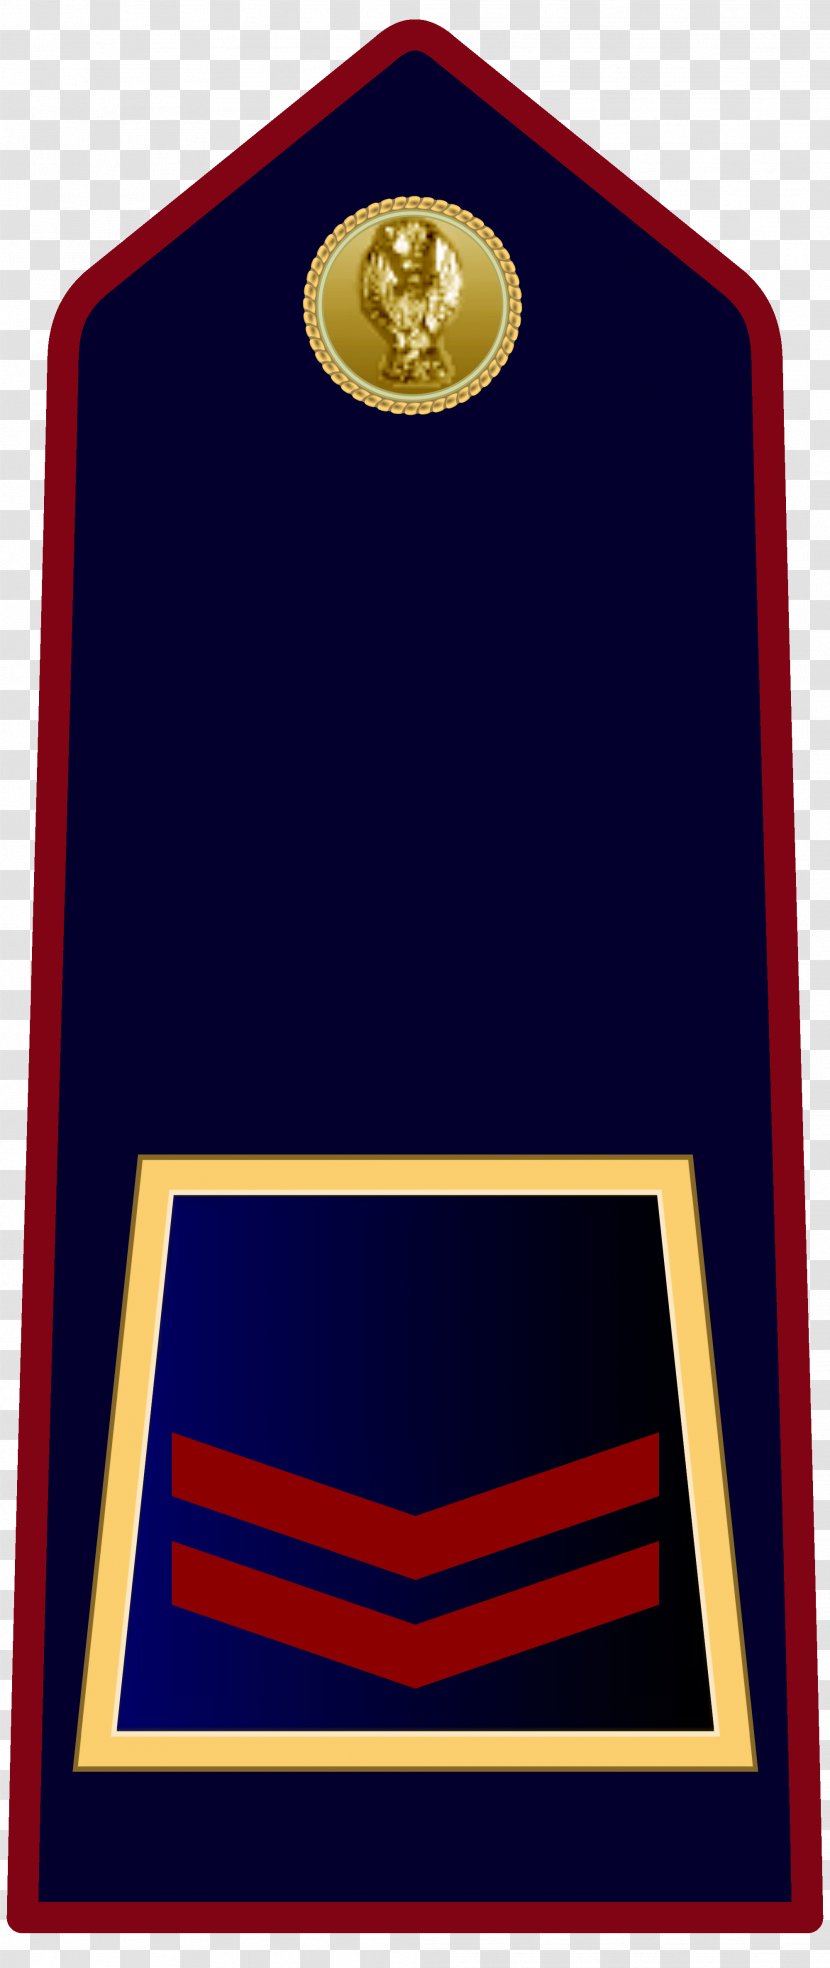 Sostituto Commissario Ispettore Superiore Qualifiche Della Polizia Di Stato - Signage - Police Transparent PNG